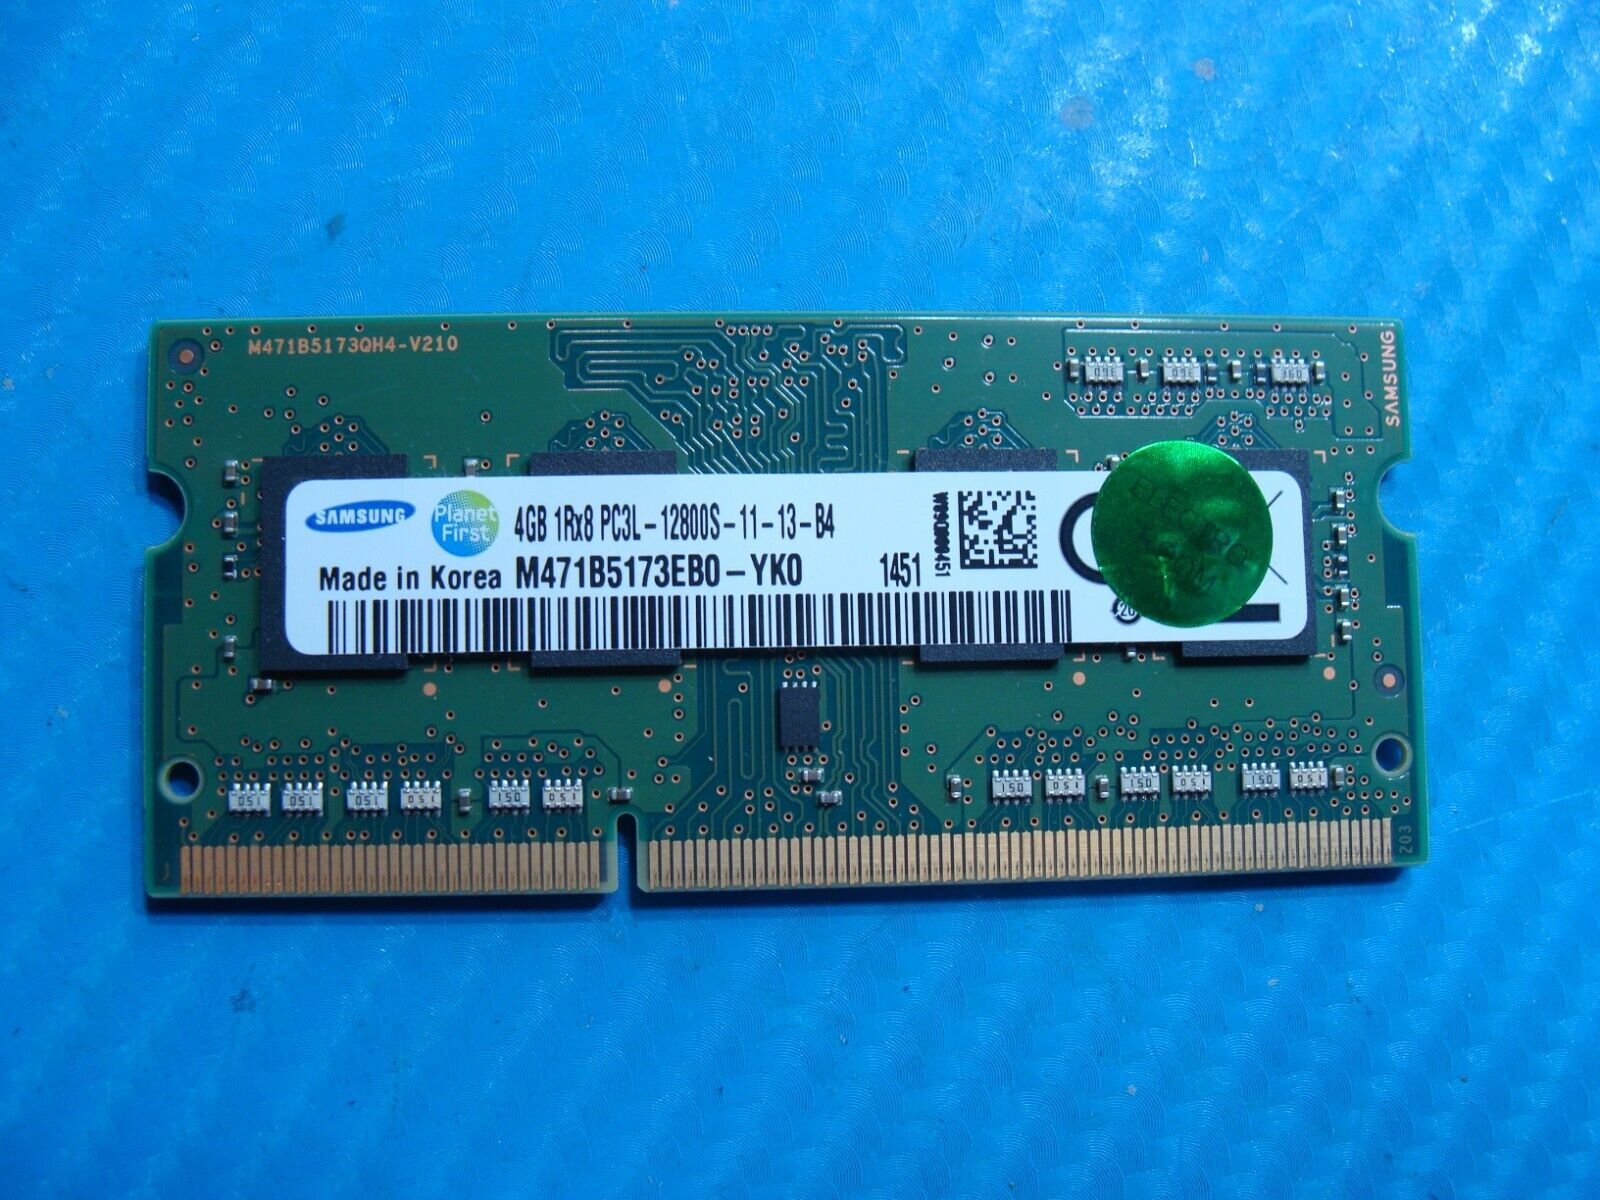 Lenovo T440P Samsung 4GB 1Rx8 PC3L-12800S Memory RAM SO-DIMM  M471B5173EB0-YK0